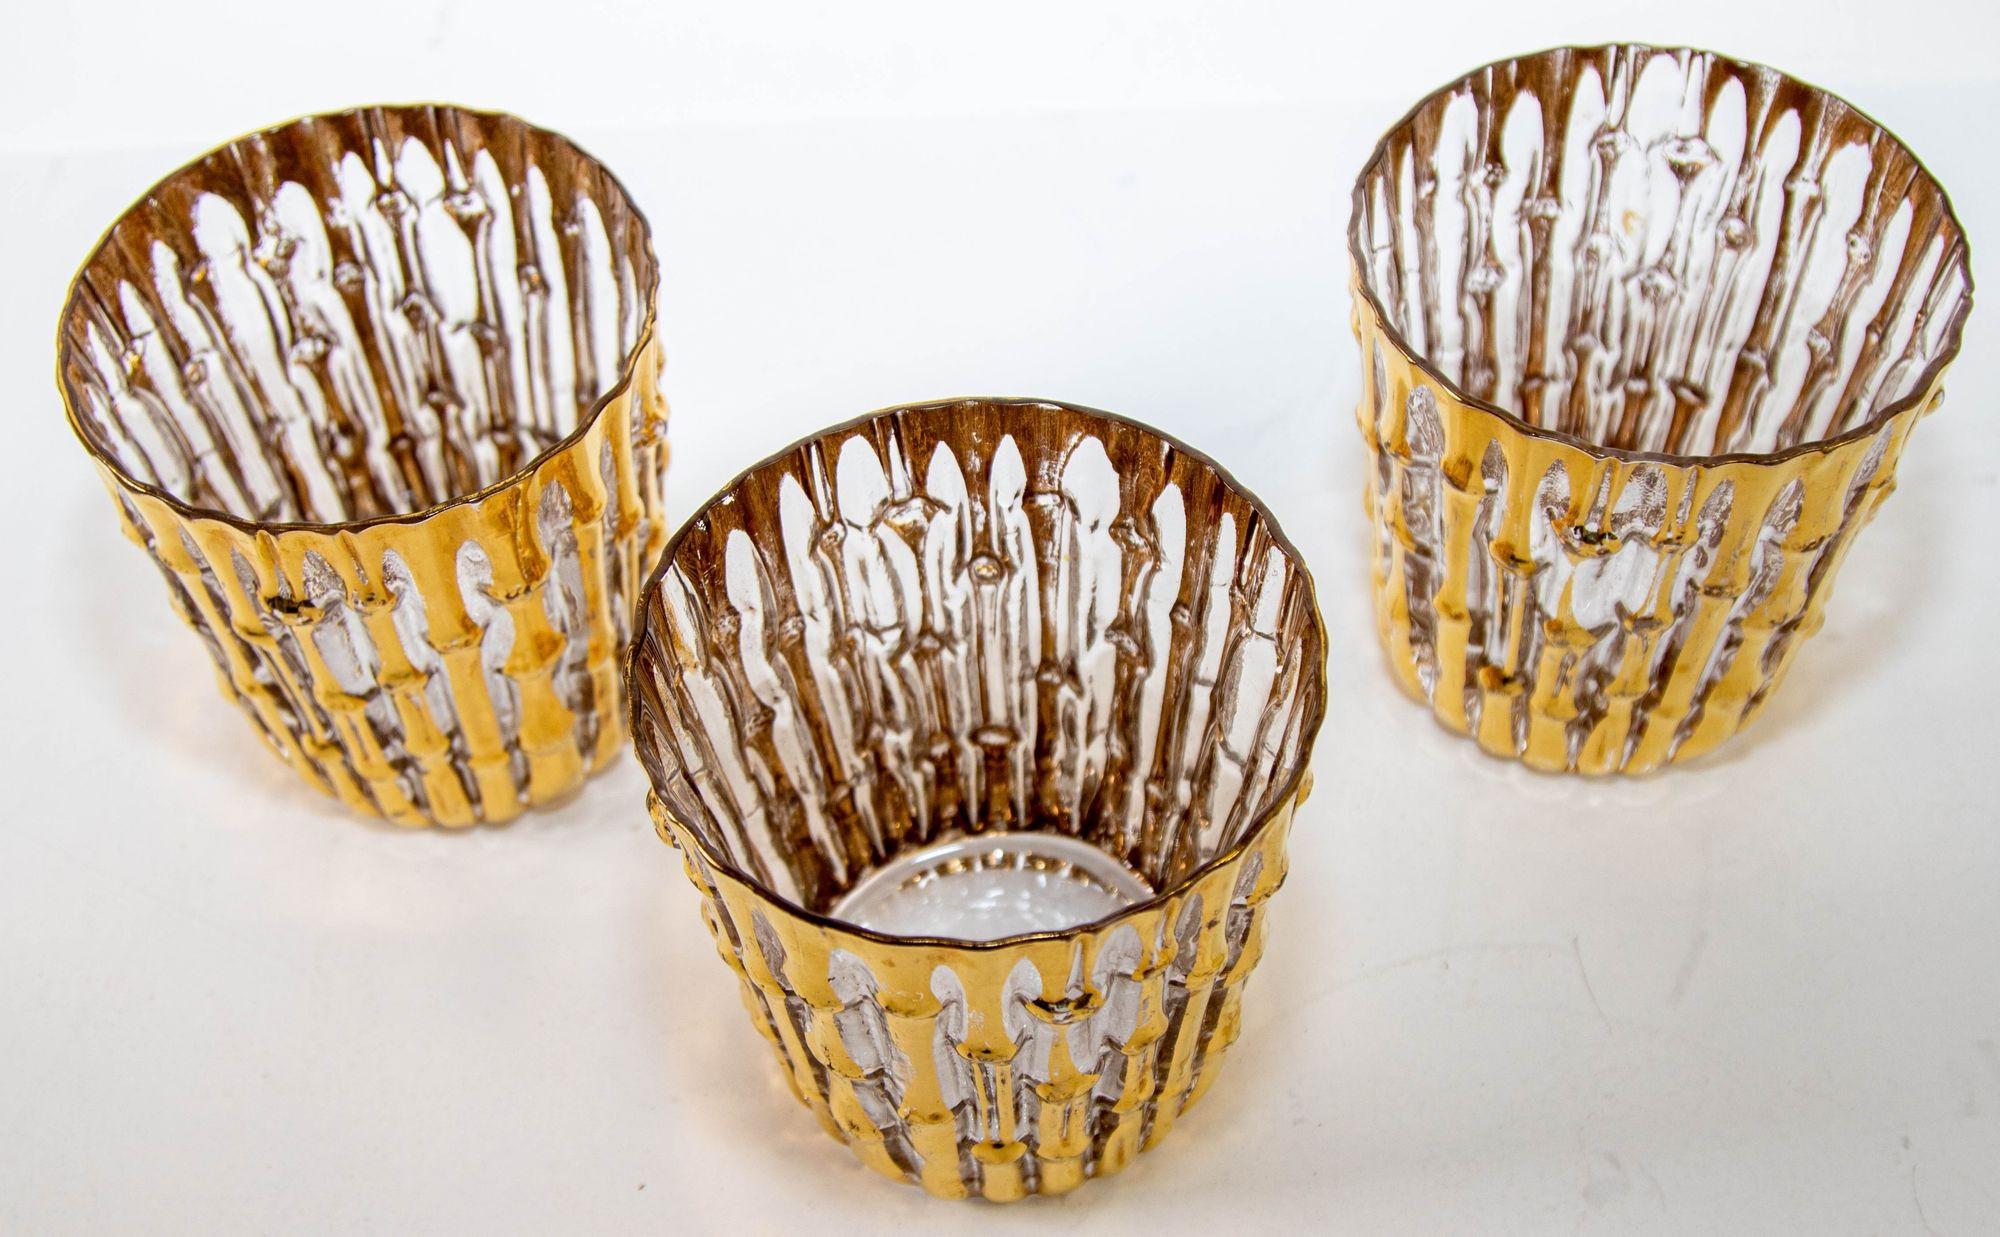 Verres à pied en bambou peint à la main 22 carats, lot de 3, circa 1965.
Vintage Set of 22-karat gold hand painted bambu pattern rocks glasses by the Imperial Glass Company.
Le motif de bambou est époustouflant, avec un gaufrage vertical en relief